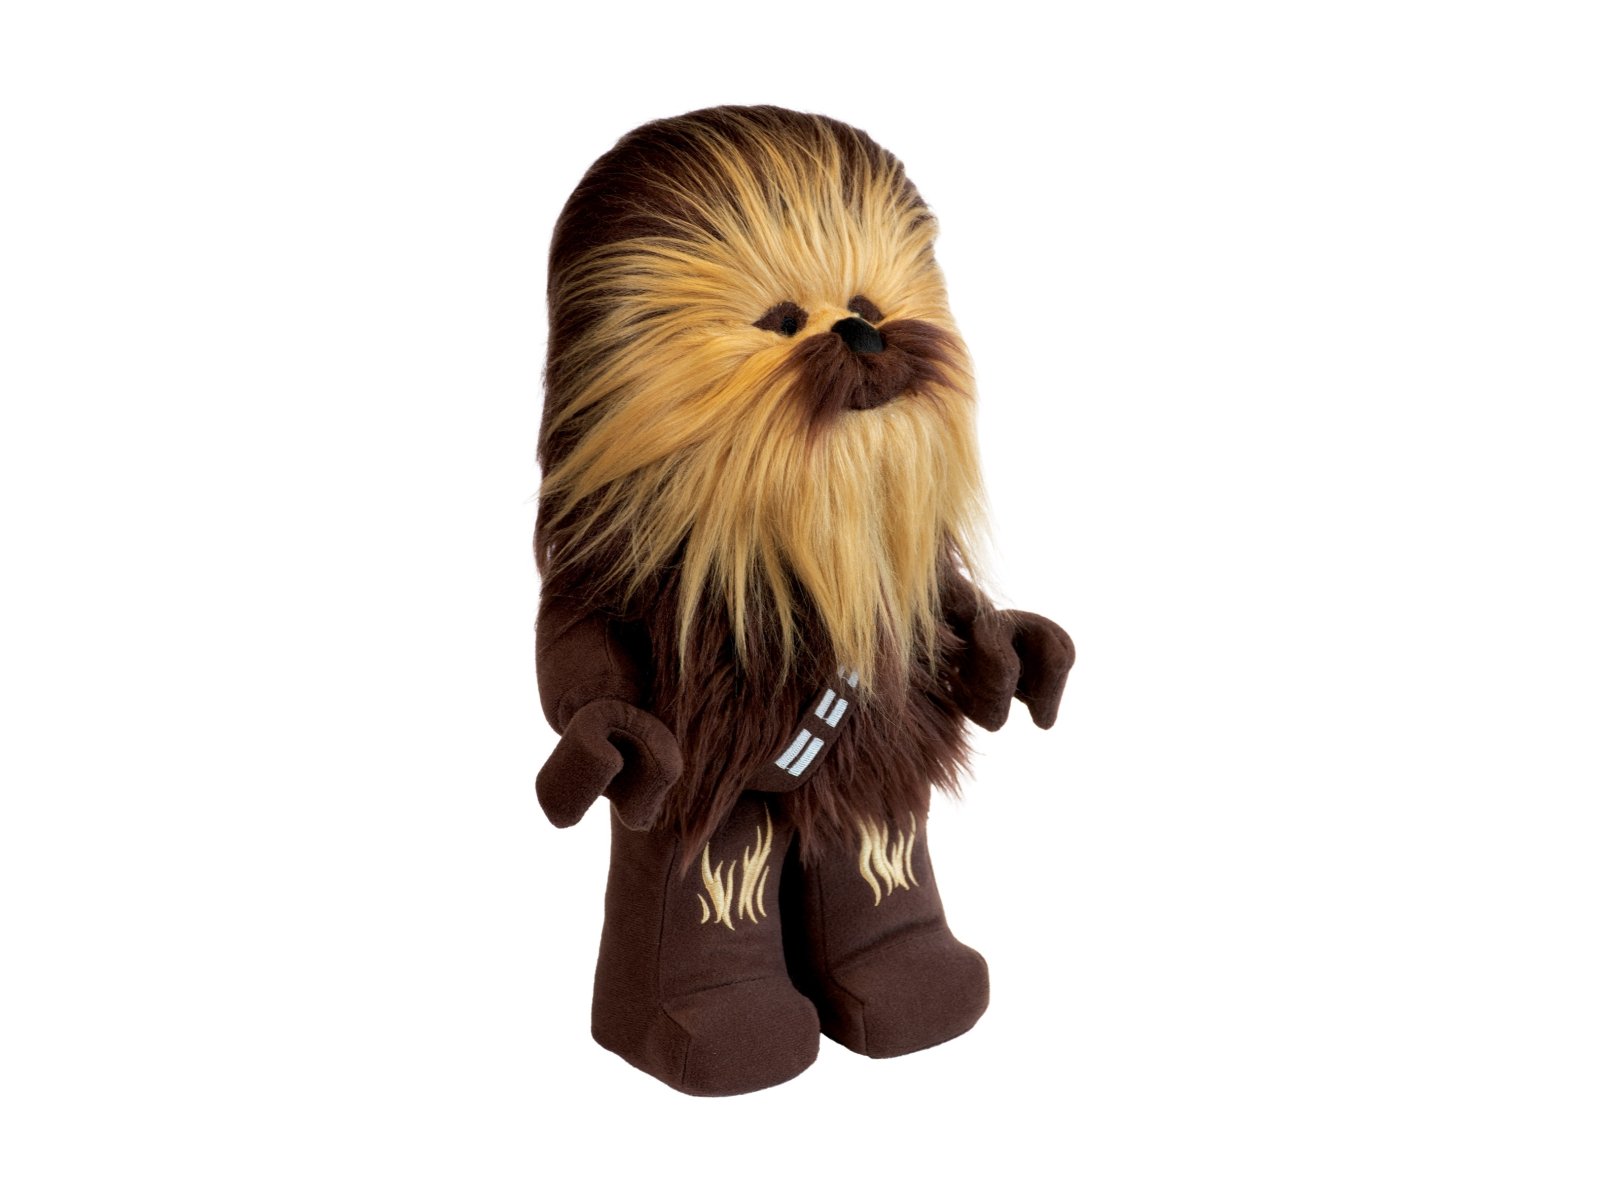 LEGO Star Wars Pluszowy Chewbacca™ 5006624